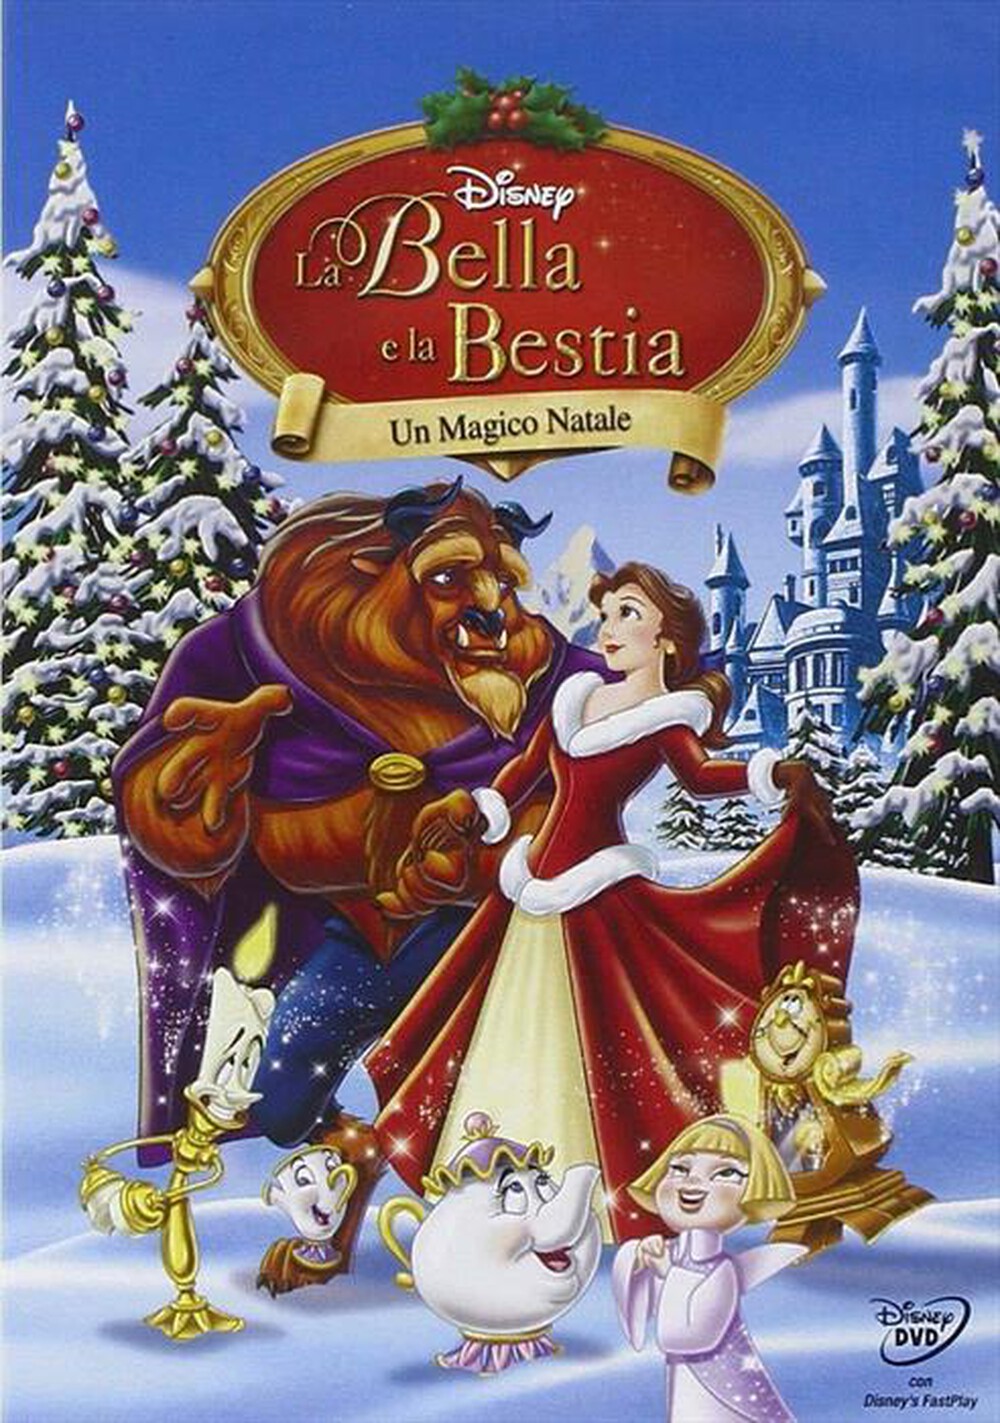 "EAGLE PICTURES - Bella E La Bestia (La) - Un Magico Natale"